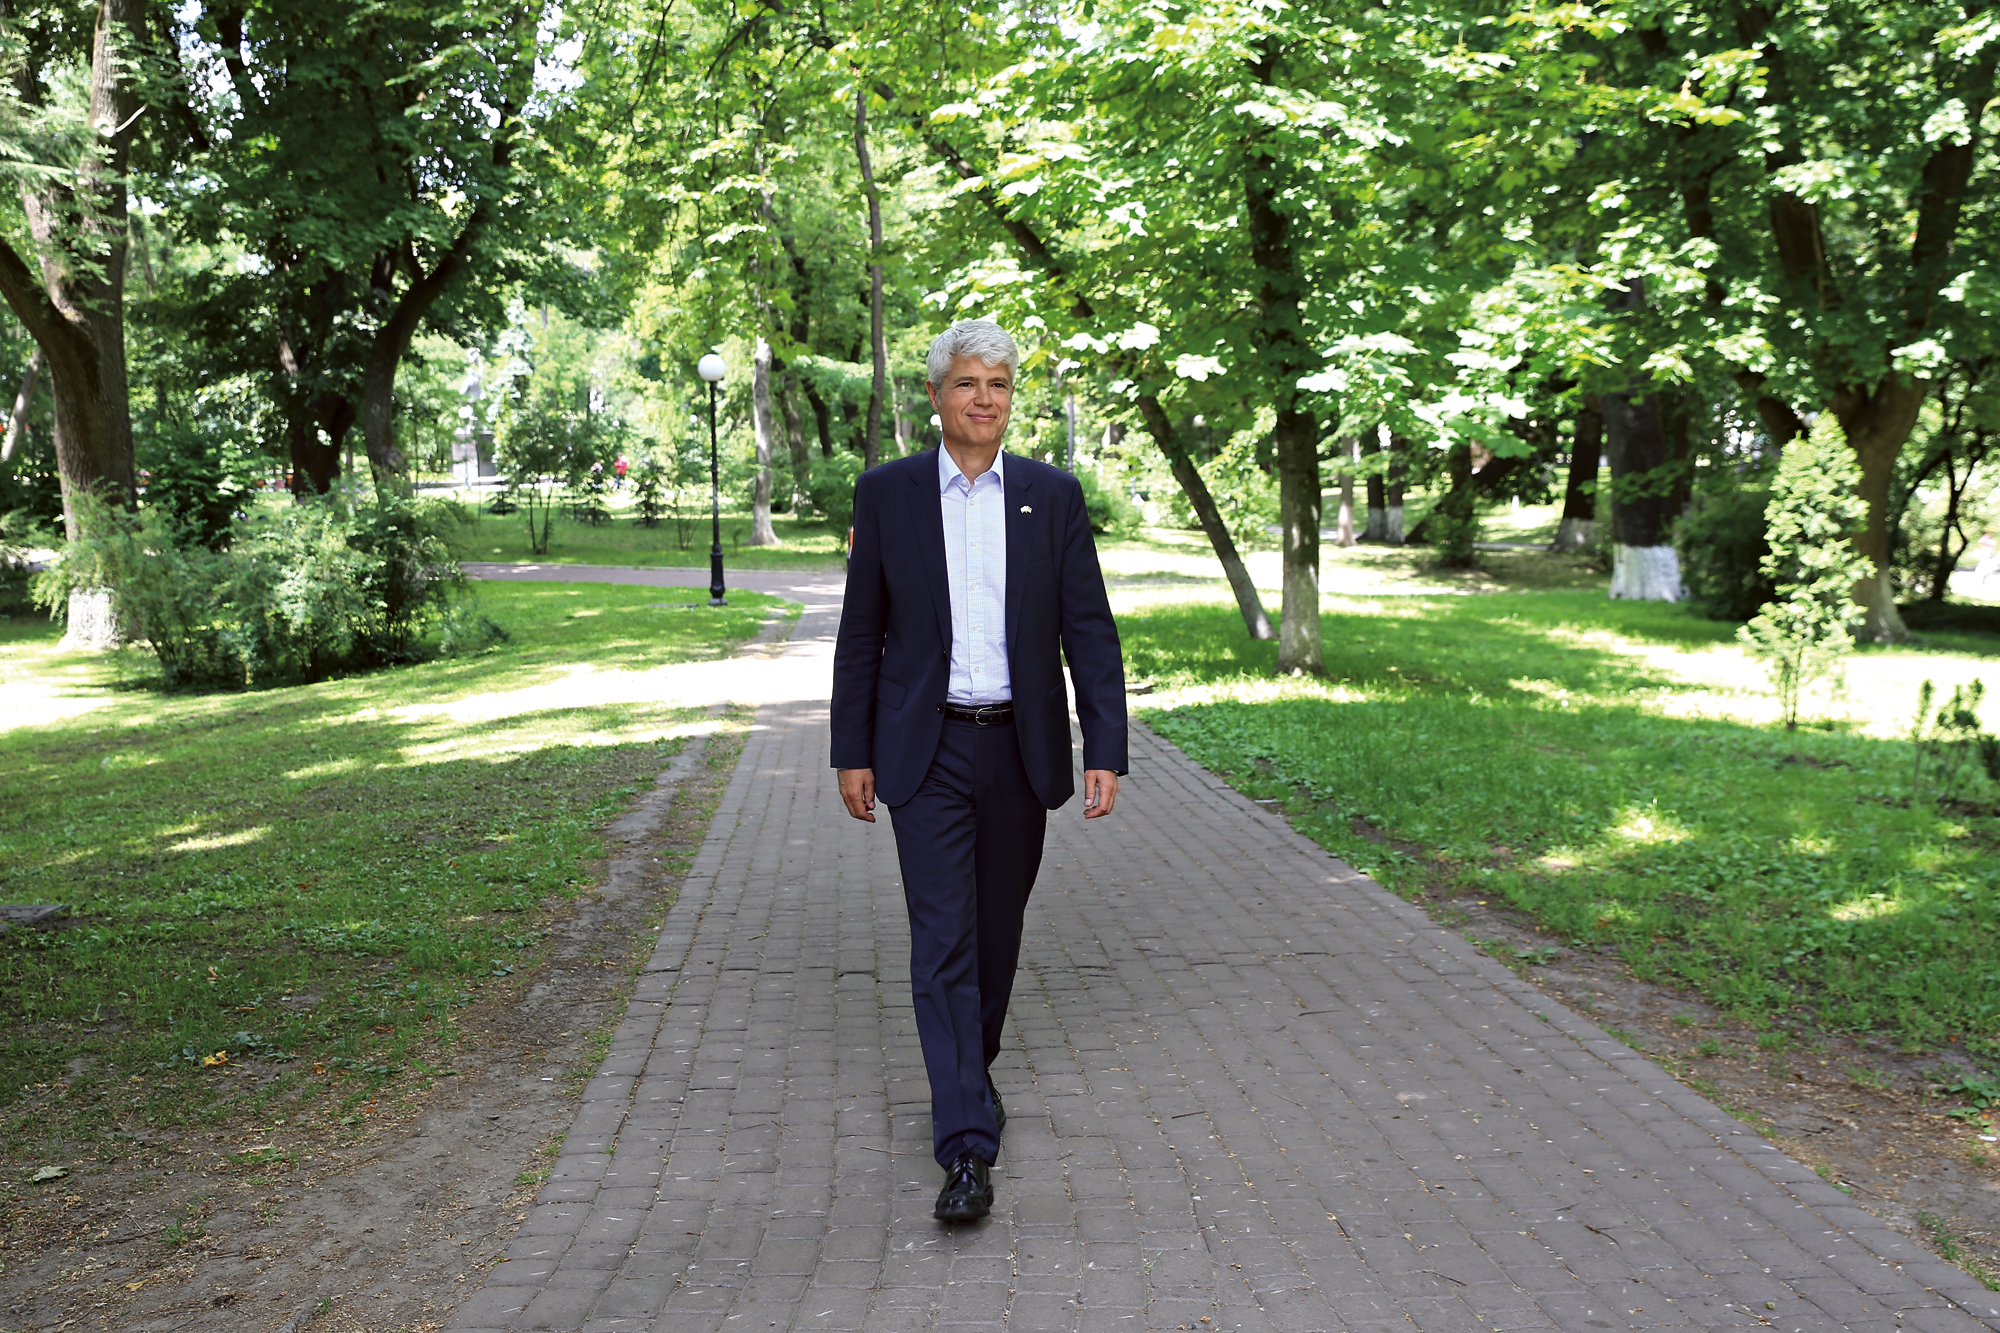 Guillaume Scheurer walking in a park